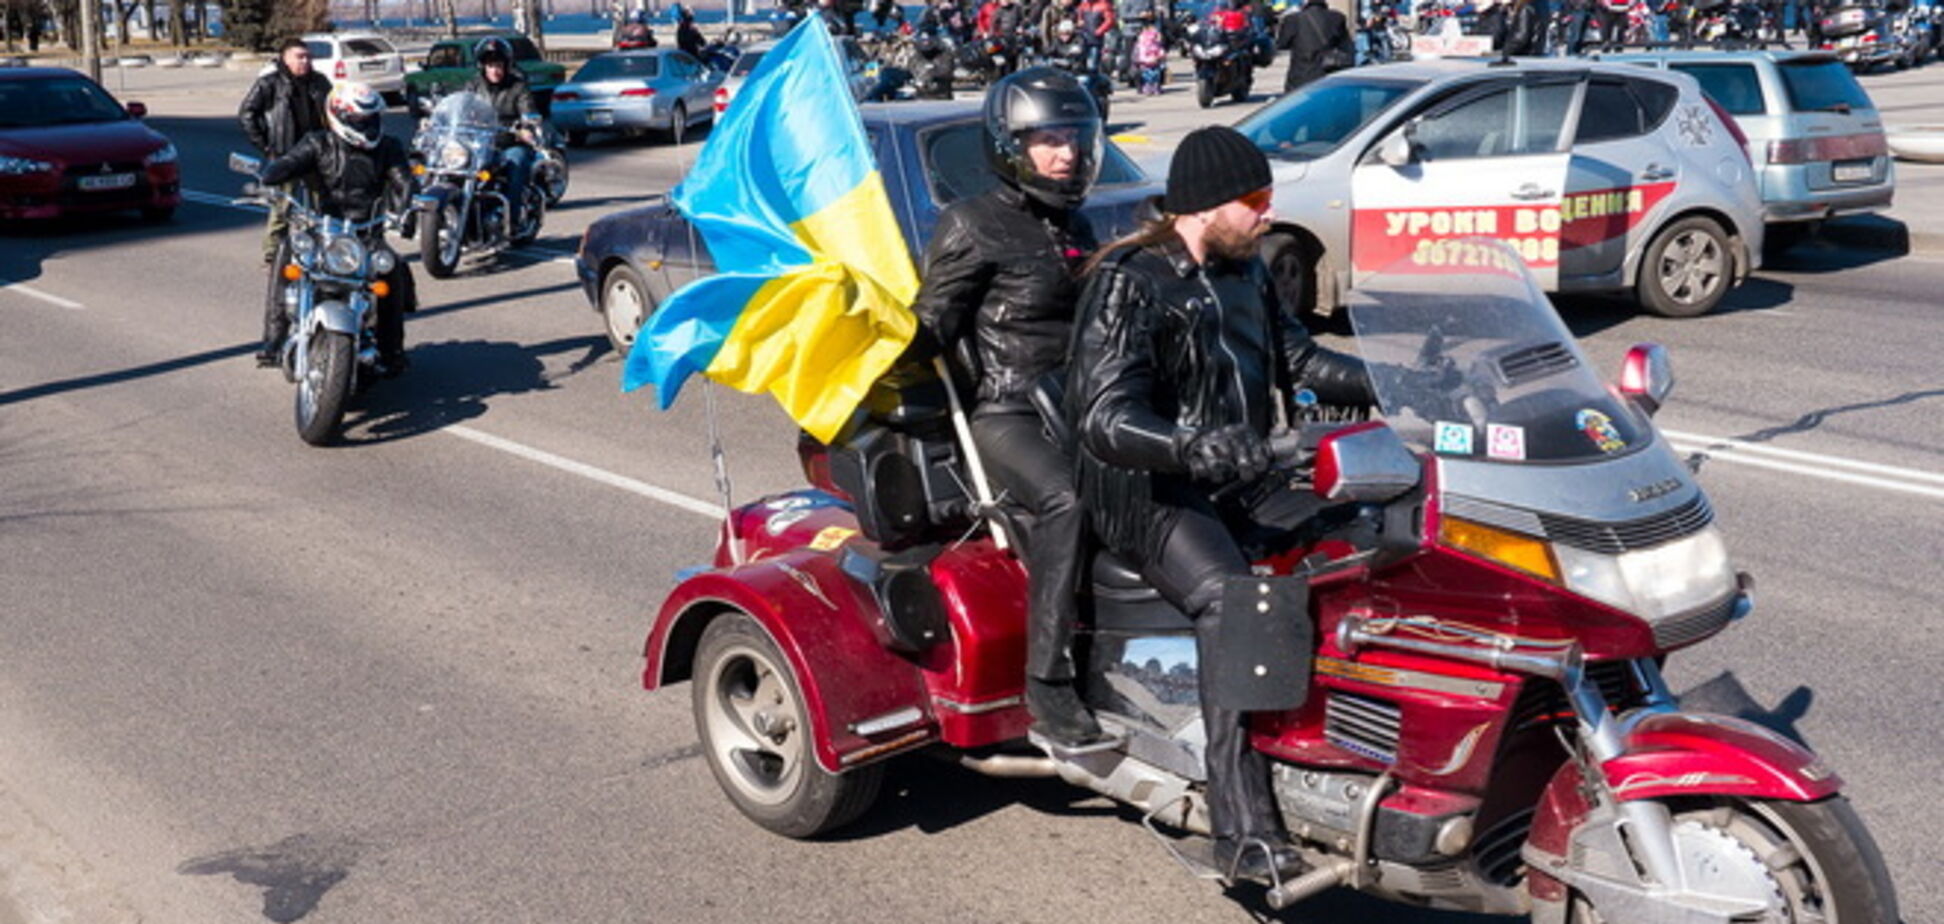 У Полтаві на підтримку єдності України пройшов парад байкерів, а дерева розмалювали в кольори українського прапора